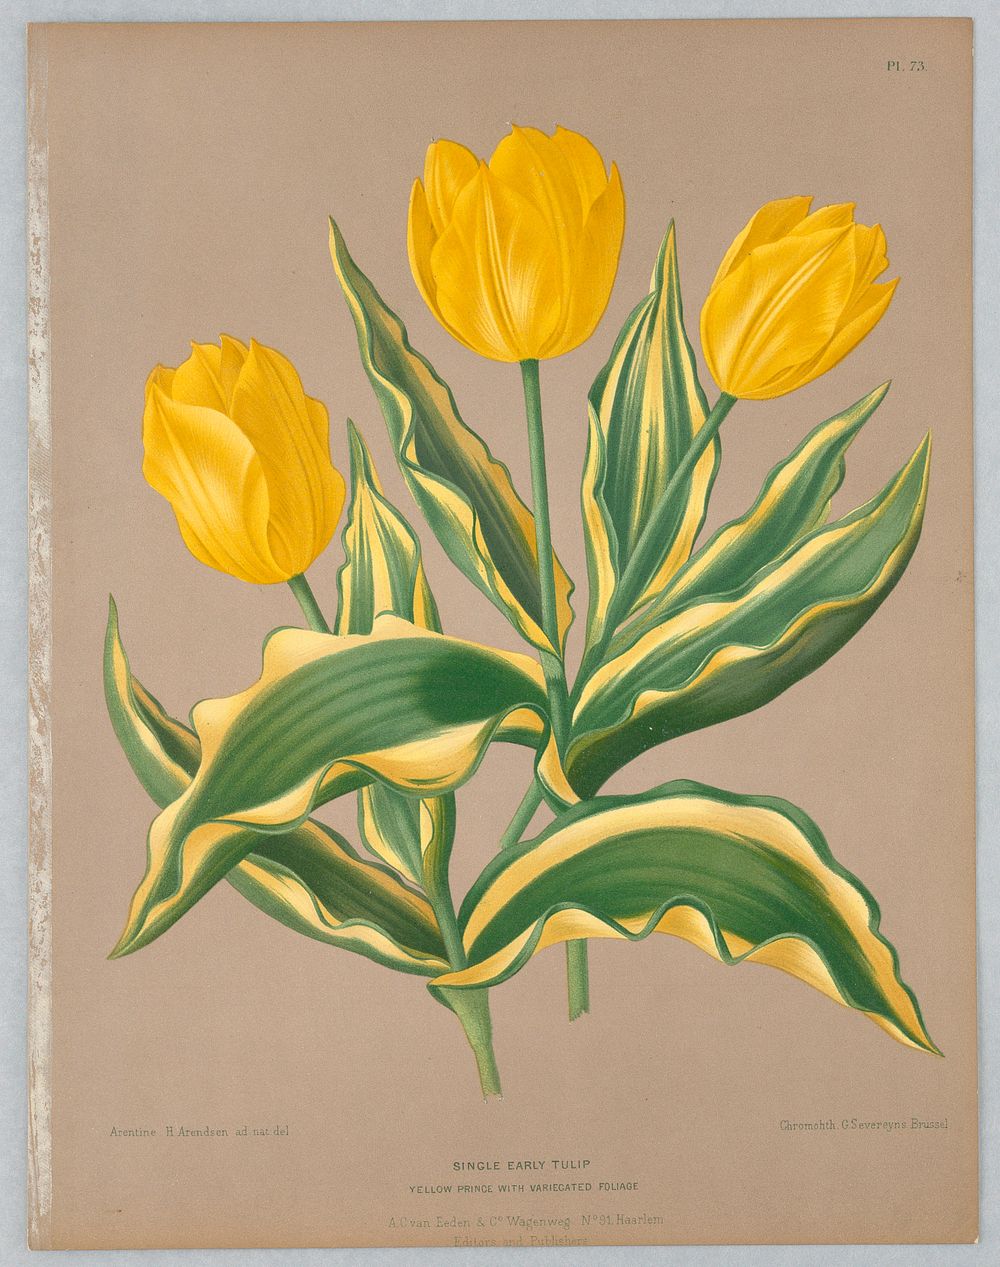 Single Early Tulip, Plate 73 from A. C. Van Eeden's "Flora of Haarlem"